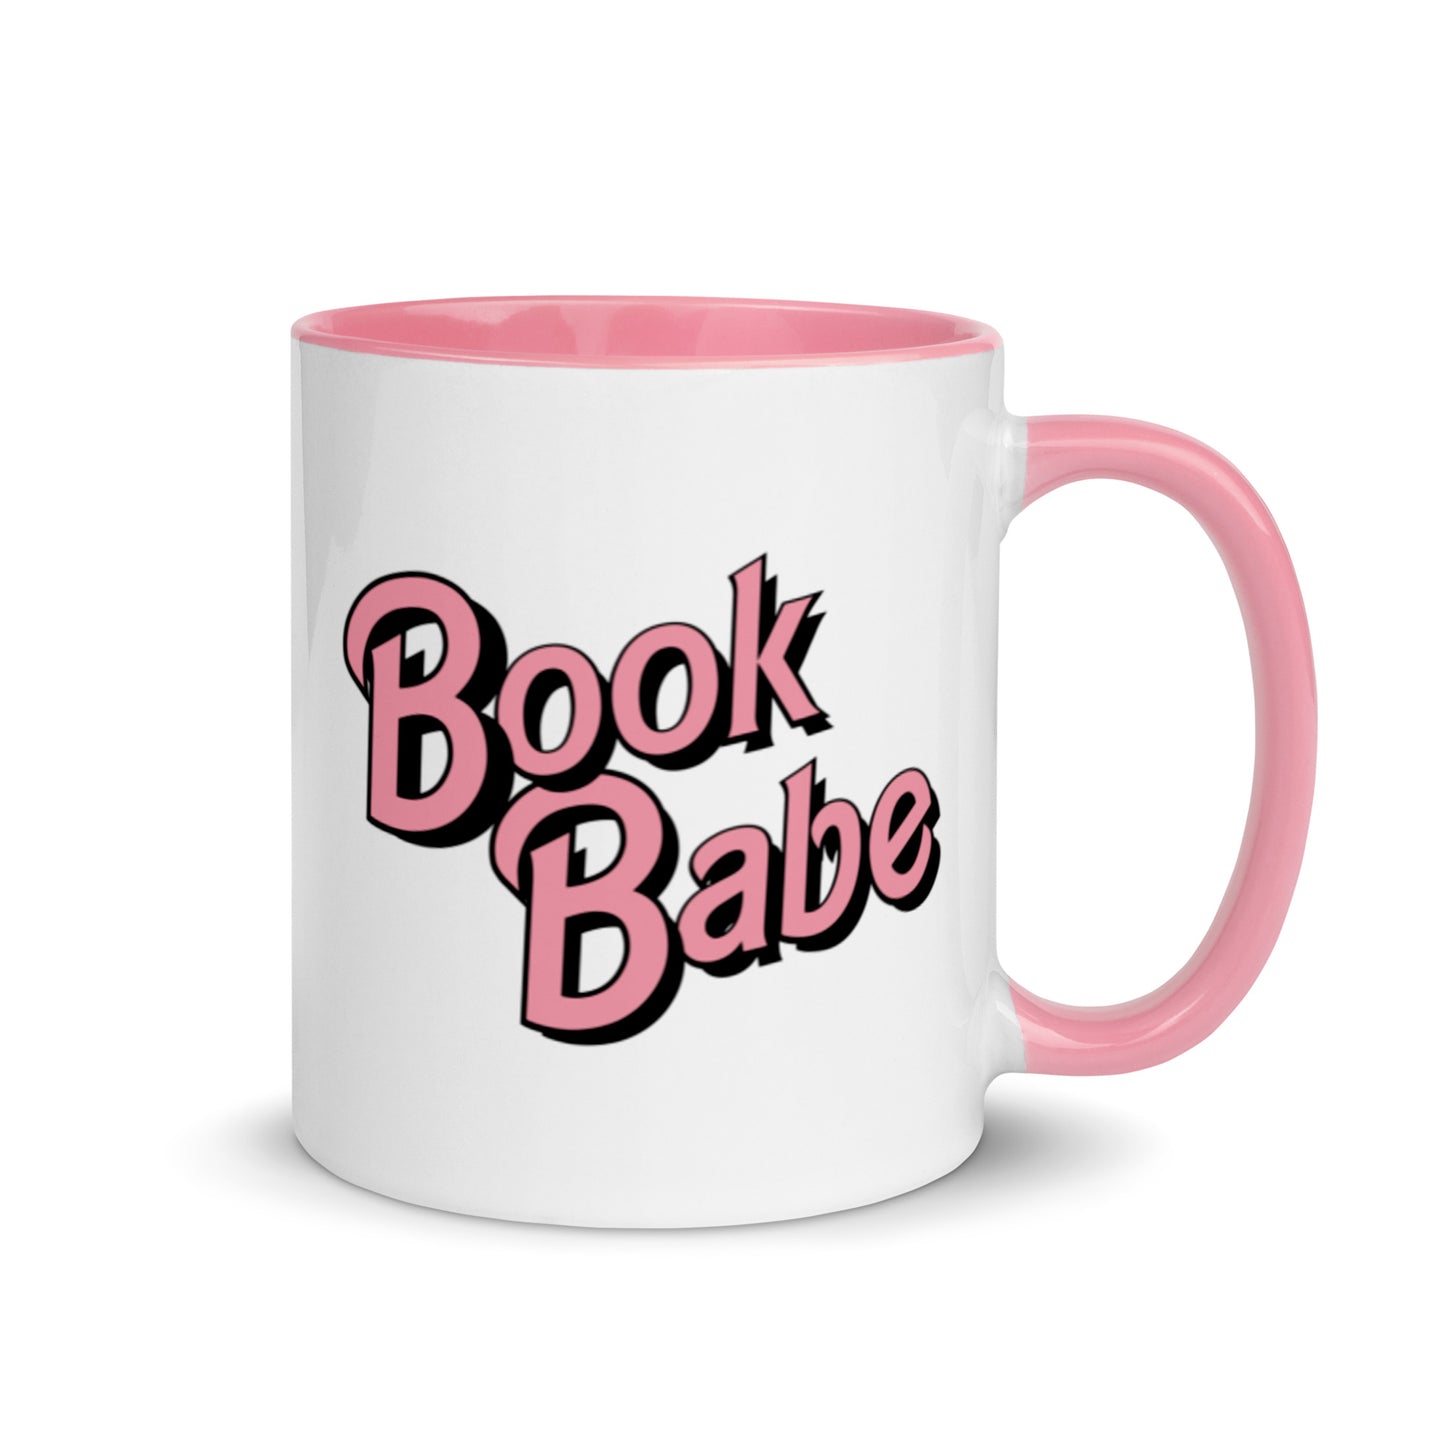 Book babe mug